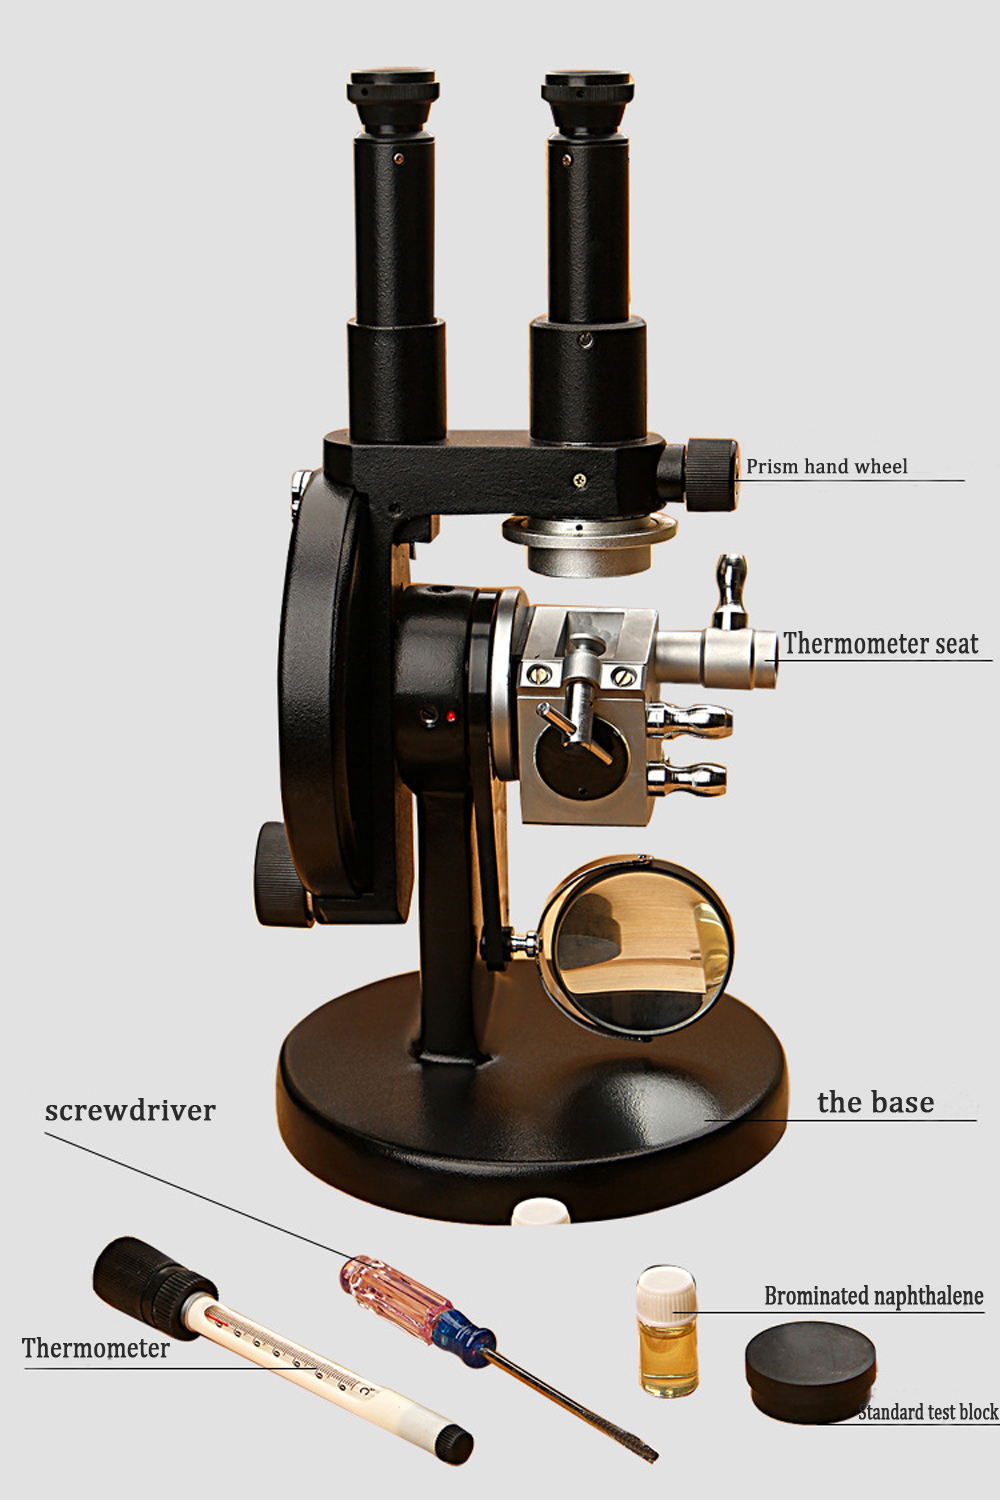 Abbe refractometer refractometer digital brix refractometer